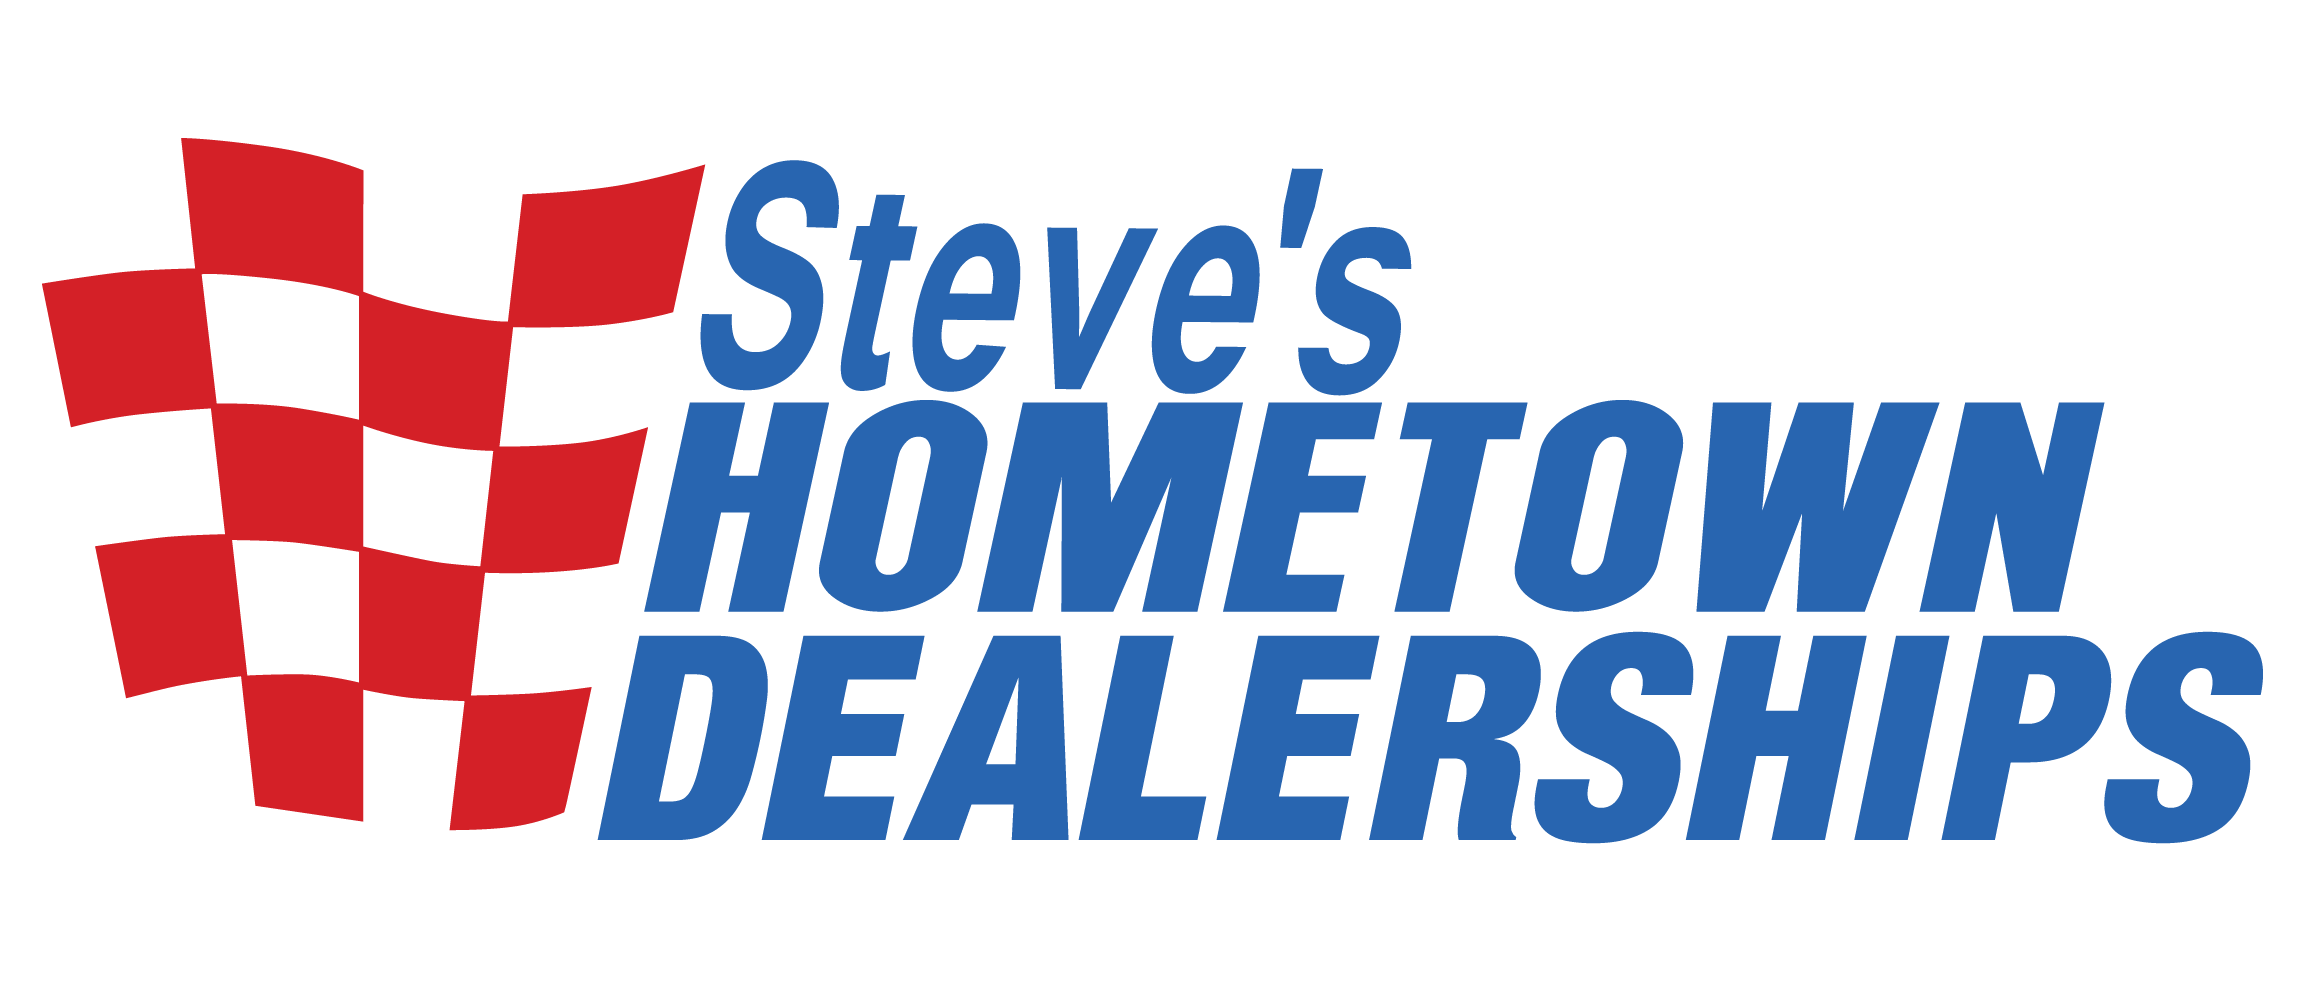 Steves Hometown Dealerships Locations.png